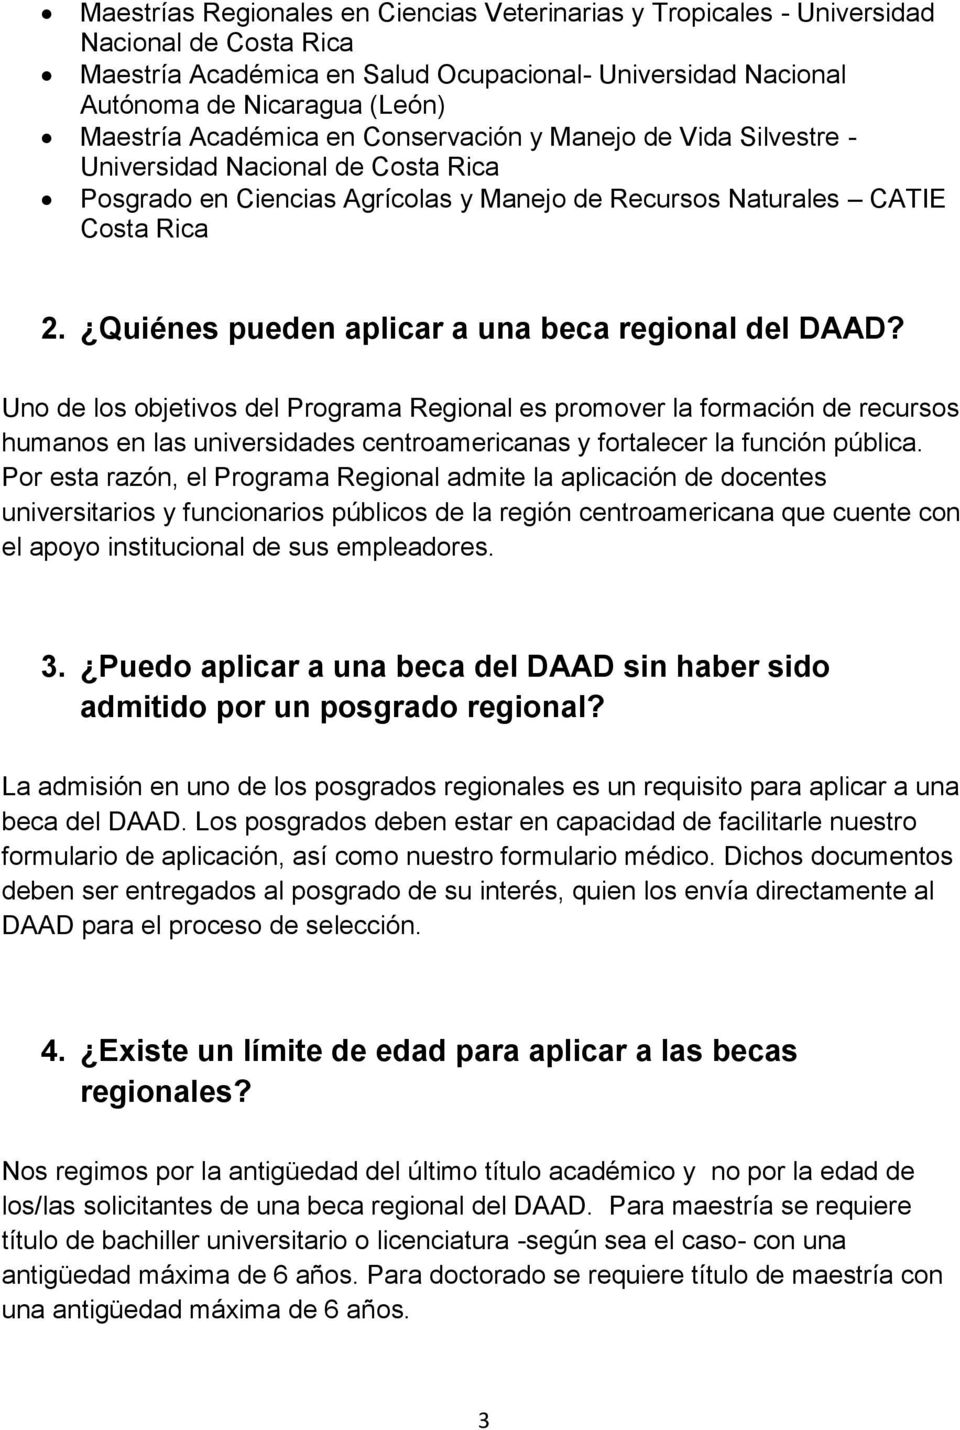 Quiénes pueden aplicar a una beca regional del DAAD?